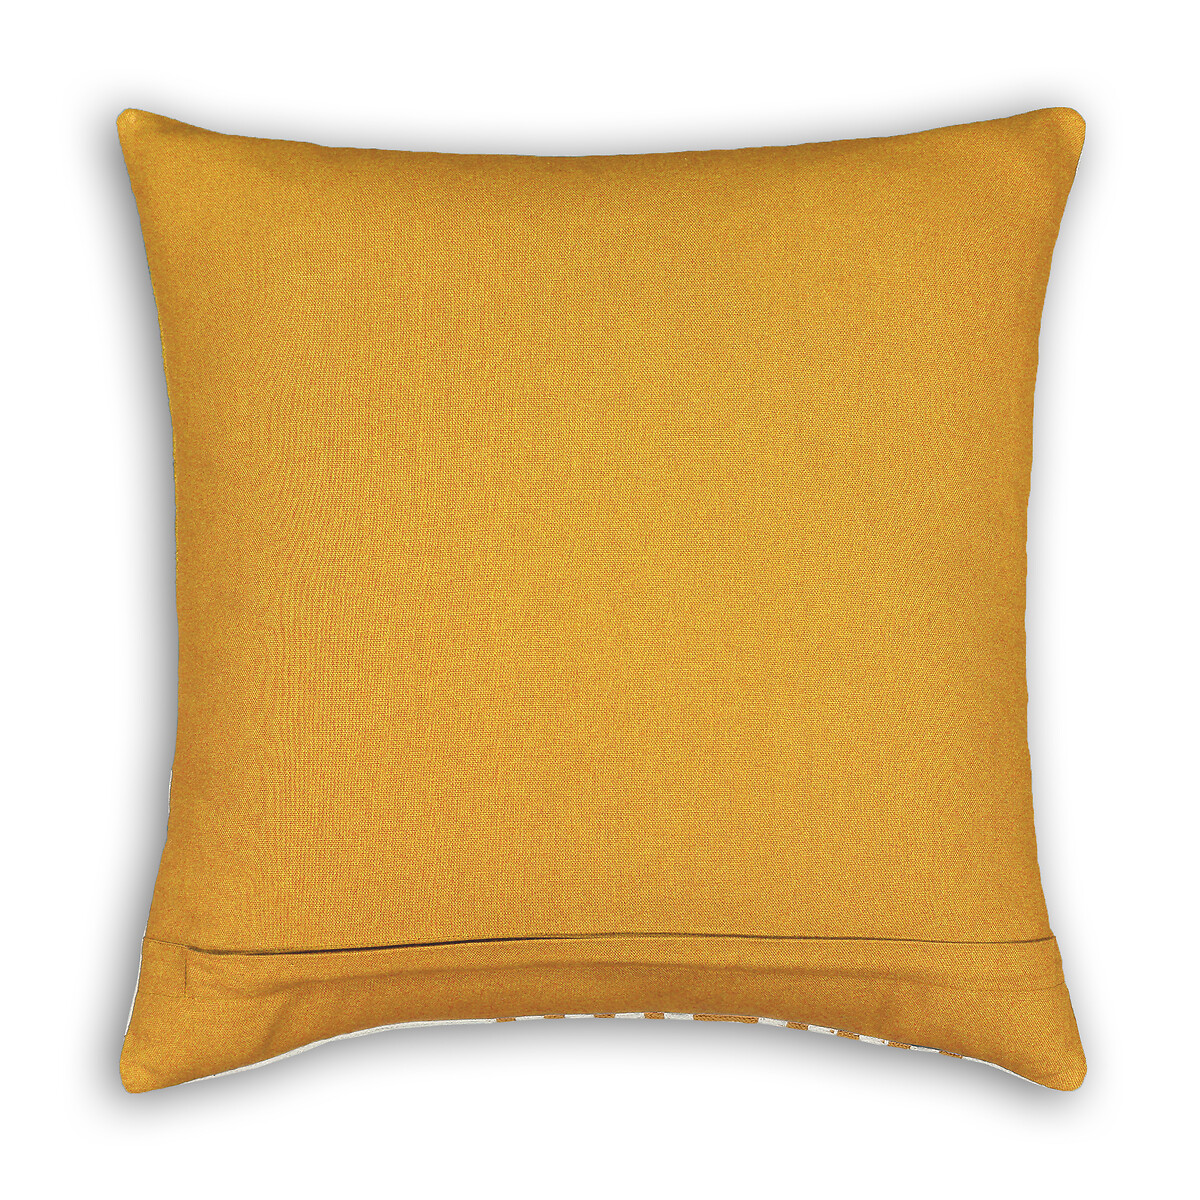 Чехол LaRedoute На подушку с вышивкой из 100 Wavy 45 x 45 см разноцветный, размер 45 x 45 см - фото 2